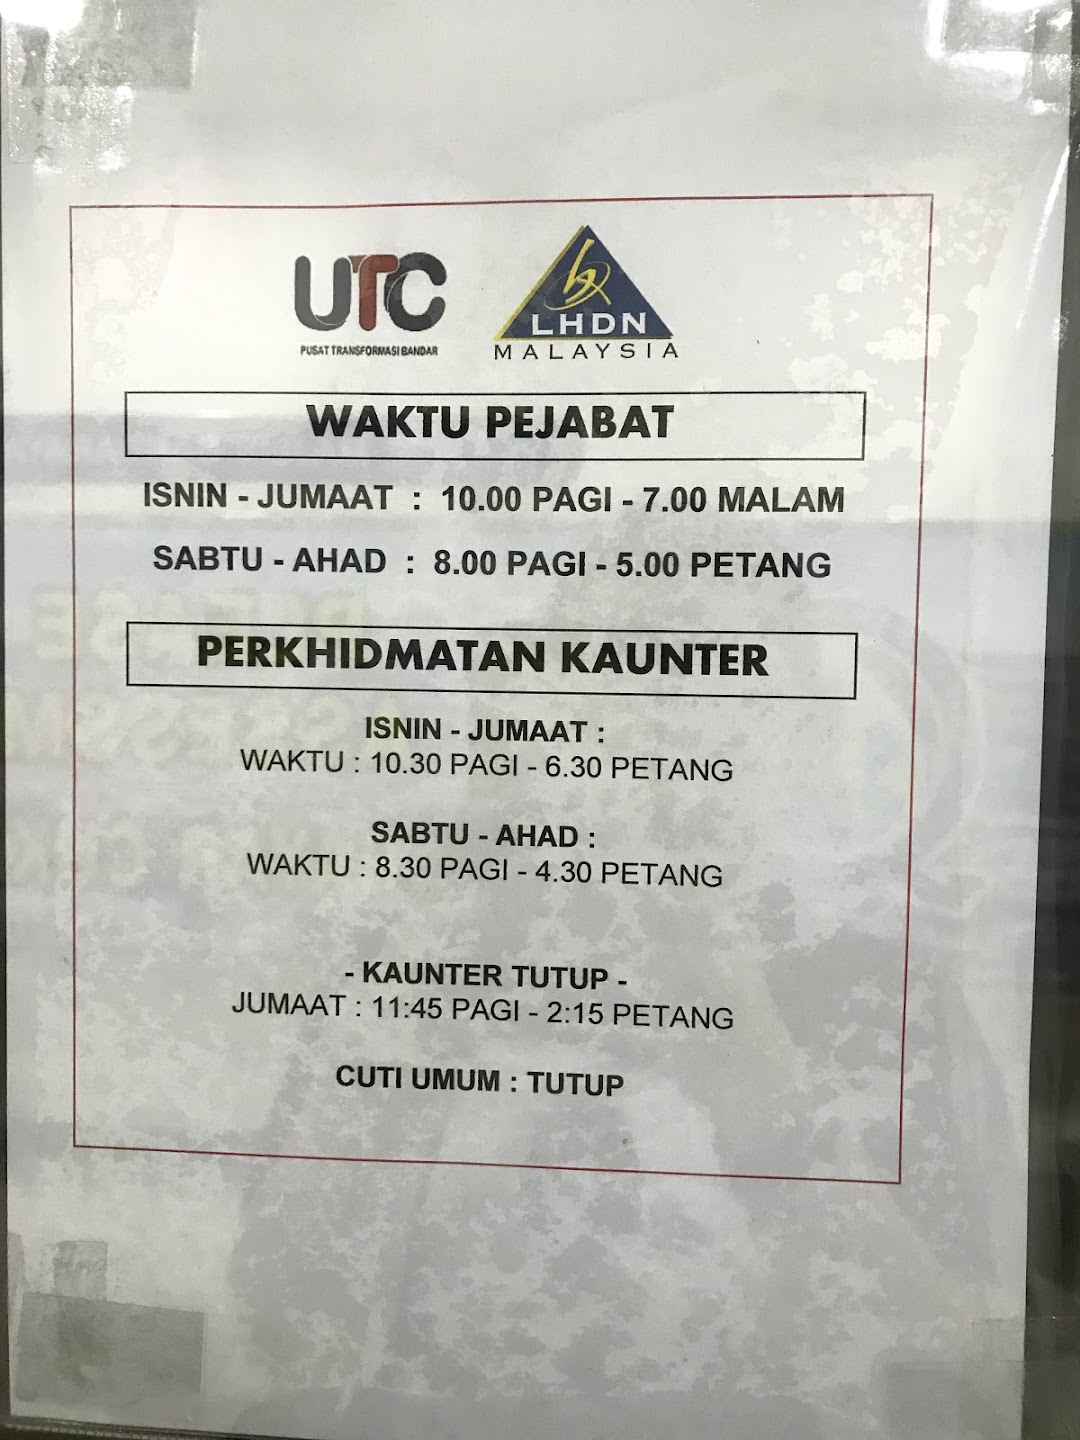 Lembaga Hasil Dalam Negeri Malaysia